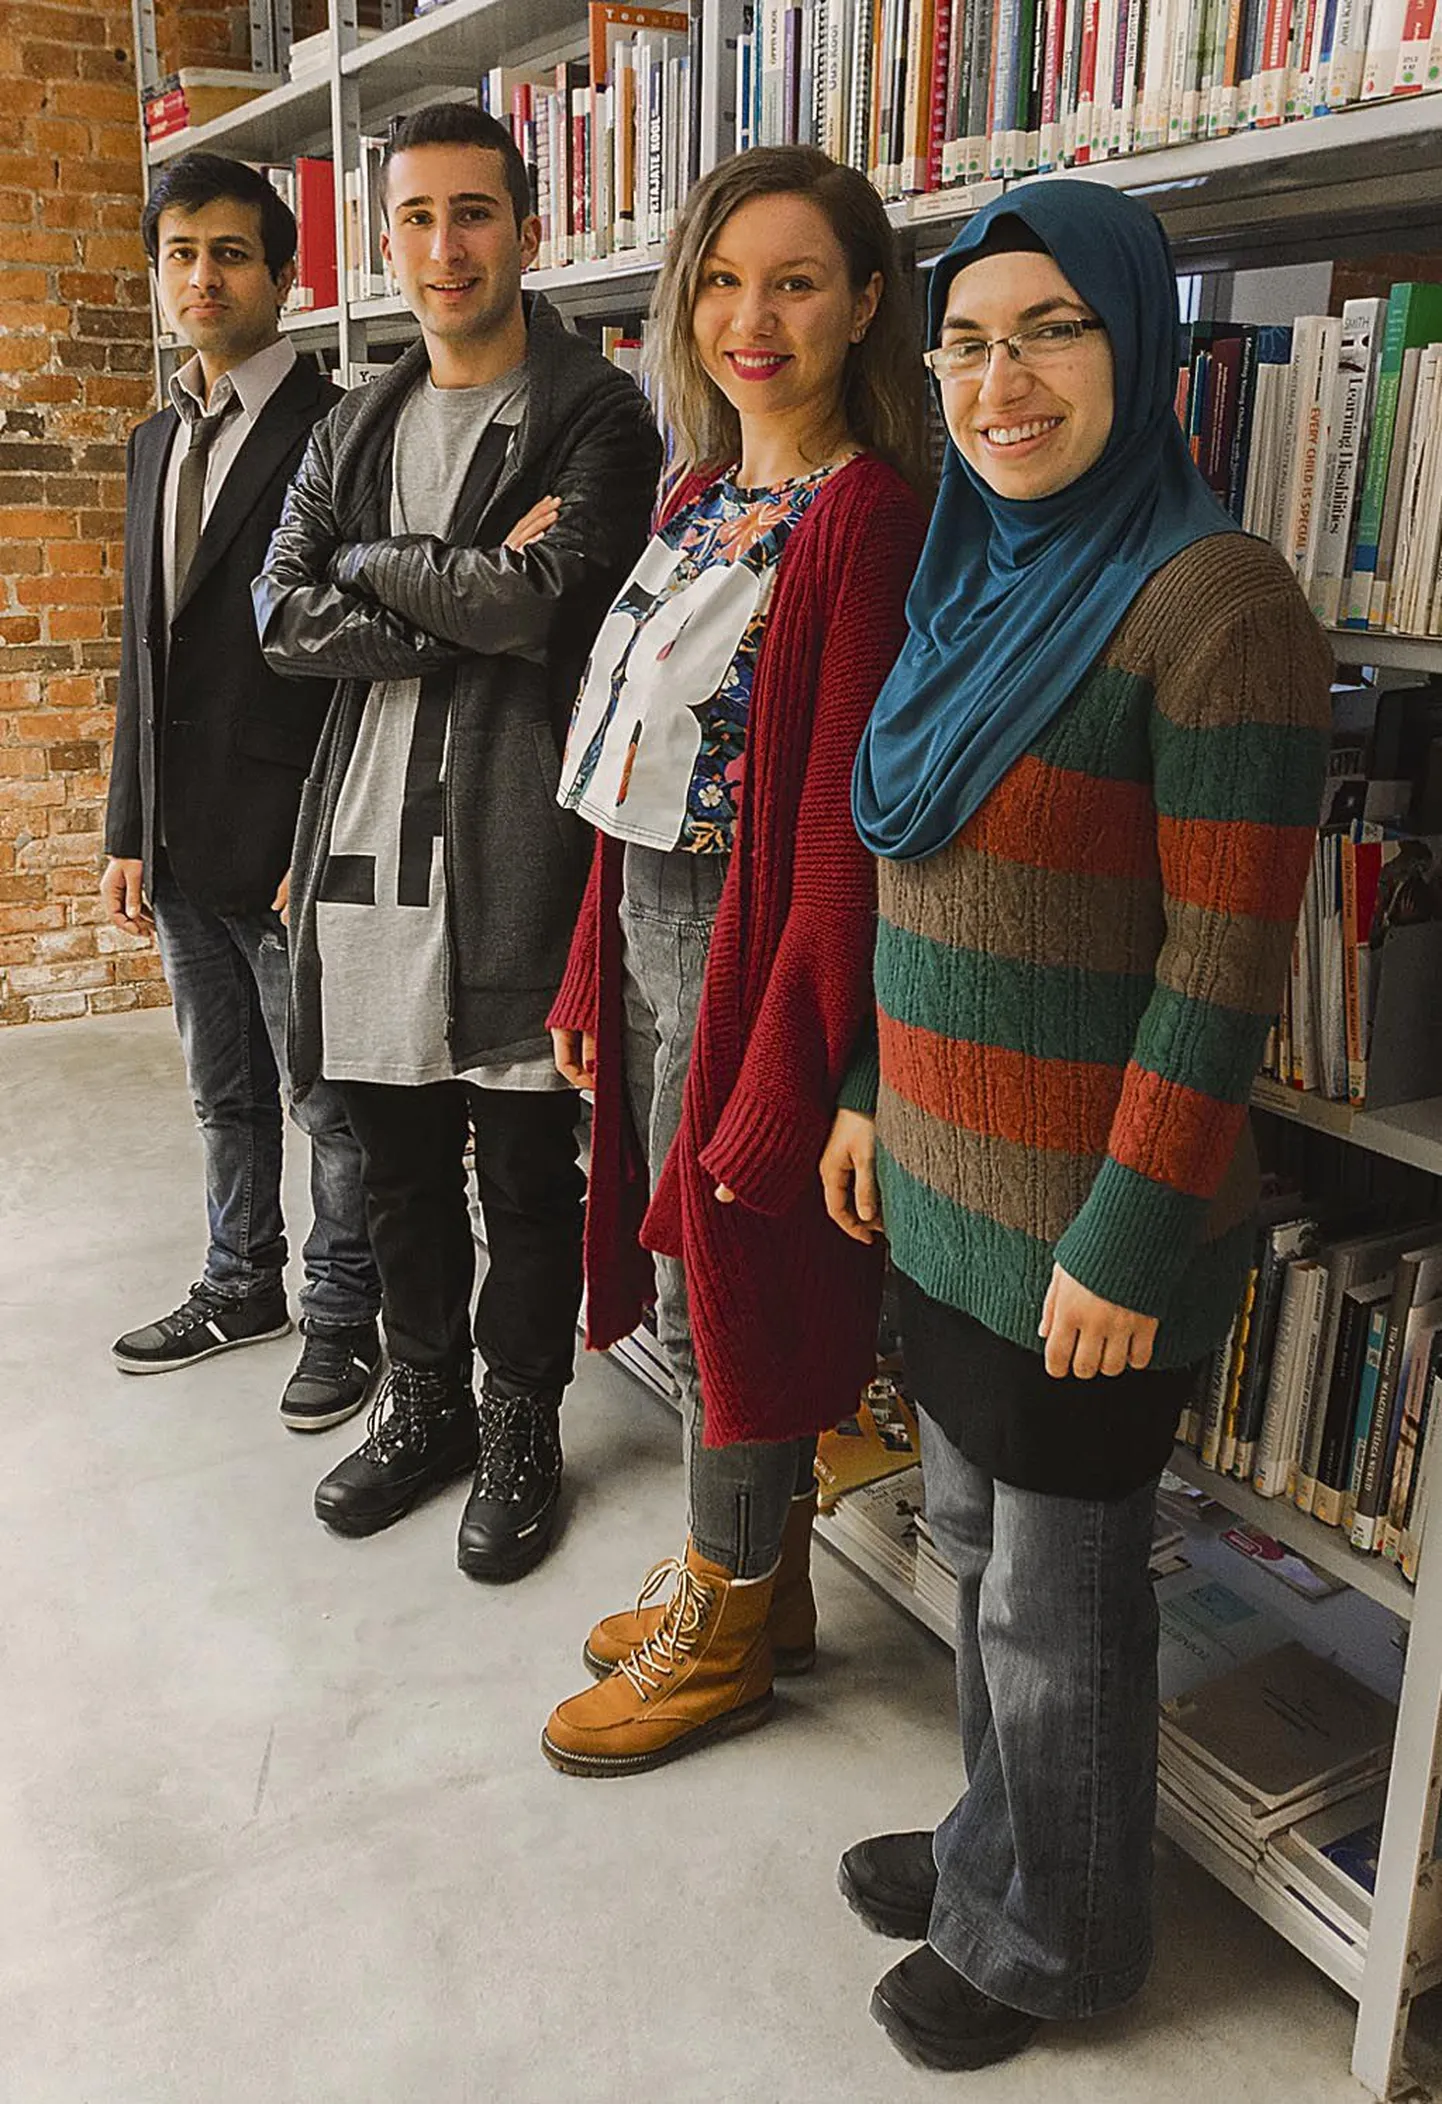 Pakistanlane Humair, Türgist pärit Turgut, poolatar Marta ja bulgaarlanna Milena õpivad Tartu ülikooli Pärnu kolledžis heaolu- ja spaateenuste disaini ja juhtimist.